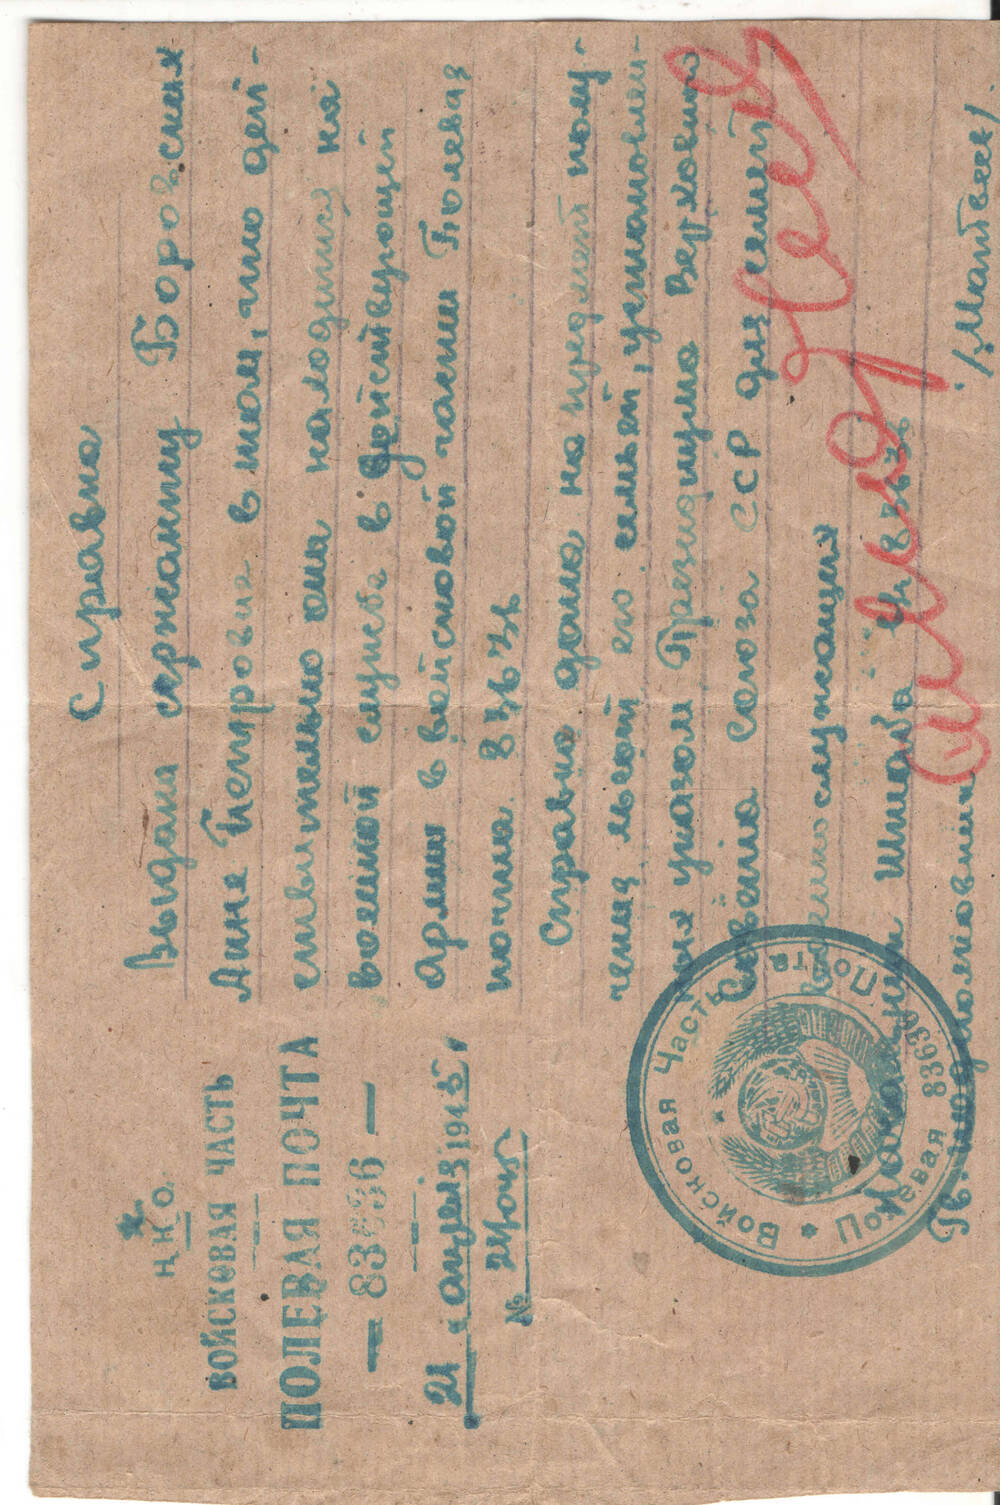 Справка сержанту Боровских Анне Петровне, от 21 апреля 1945 года,  в том, что она действительно находится  на военной службе в действующей армии в войсковой части Полевая почта 83636